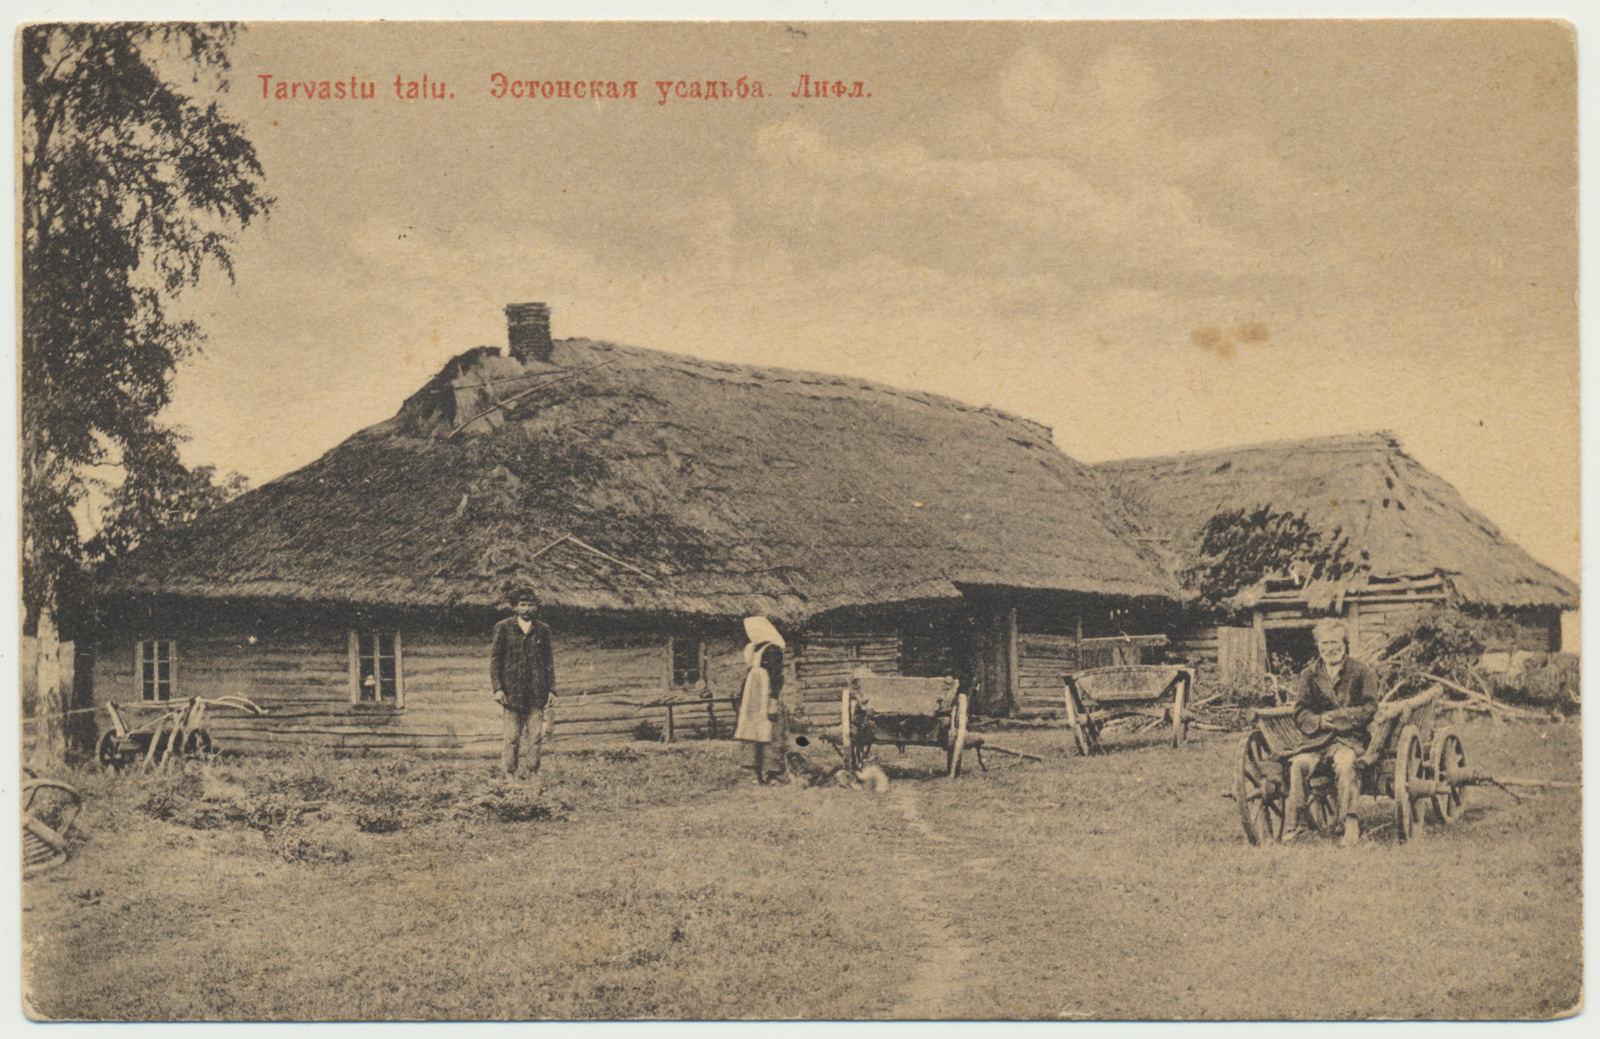 foto, Viljandimaa, Tarvastu, talu, 1912, foto J. Pääsuke